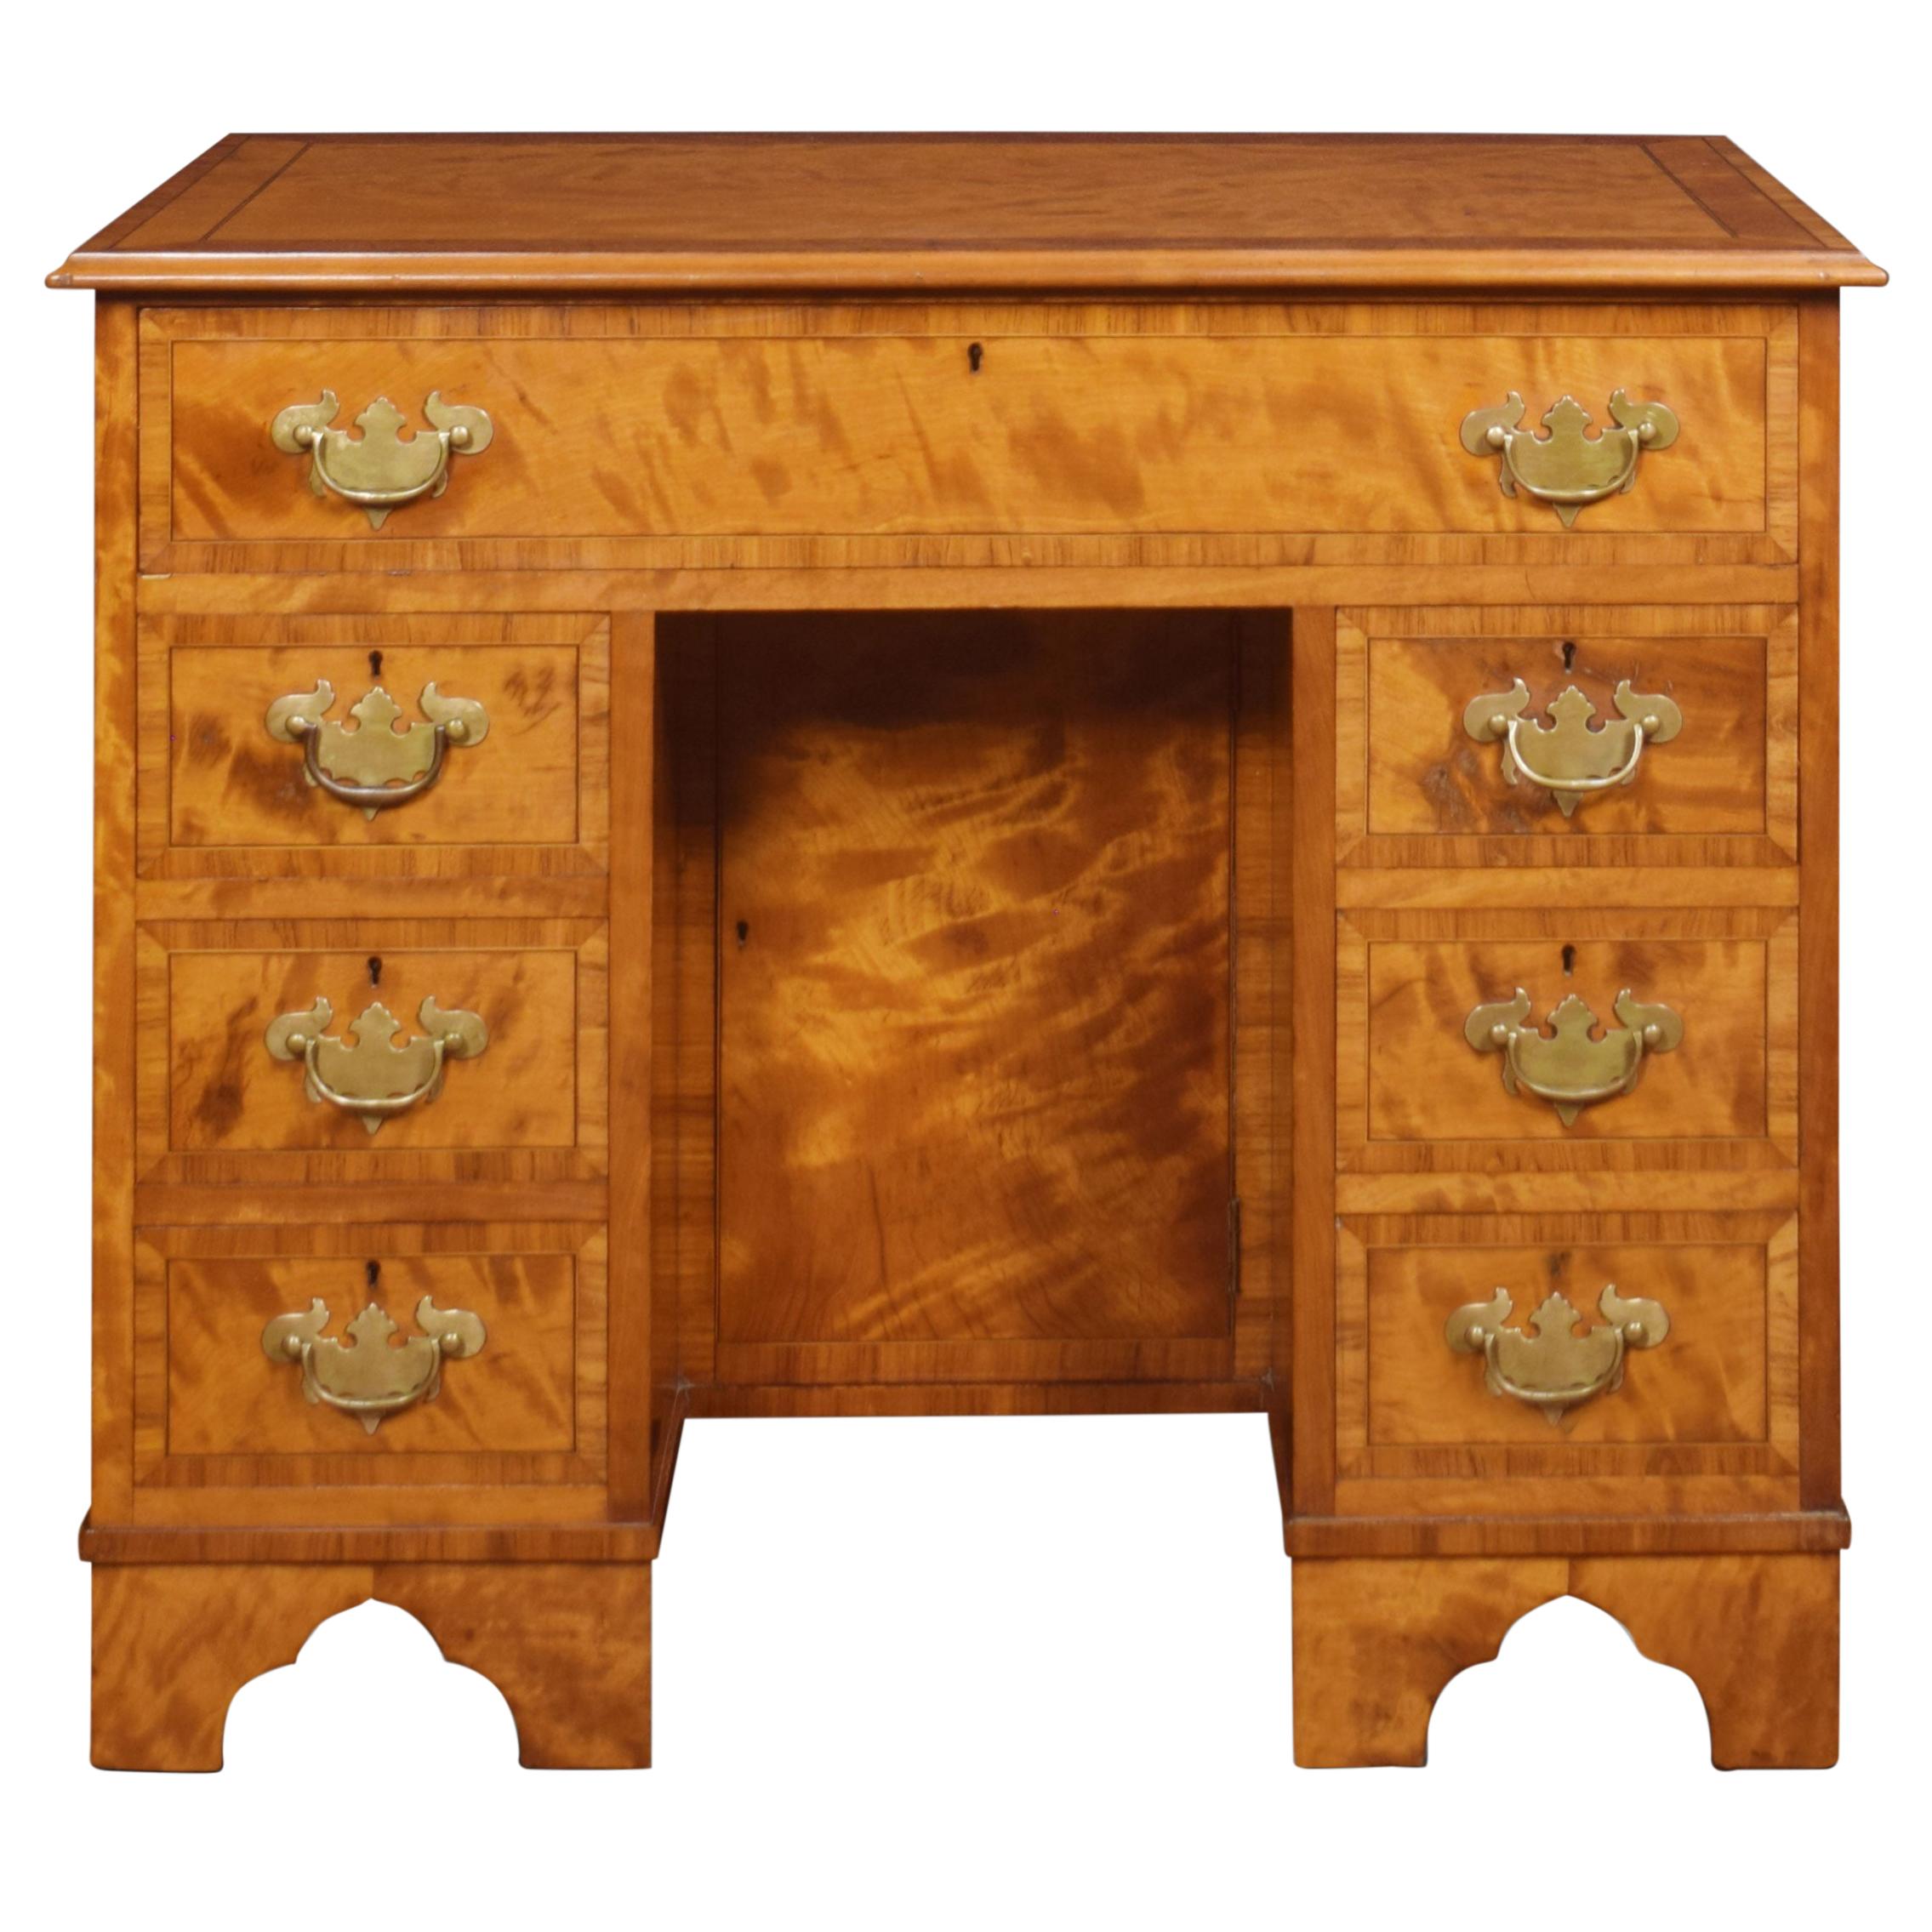 George III Style Satinwood Kneehole Desk